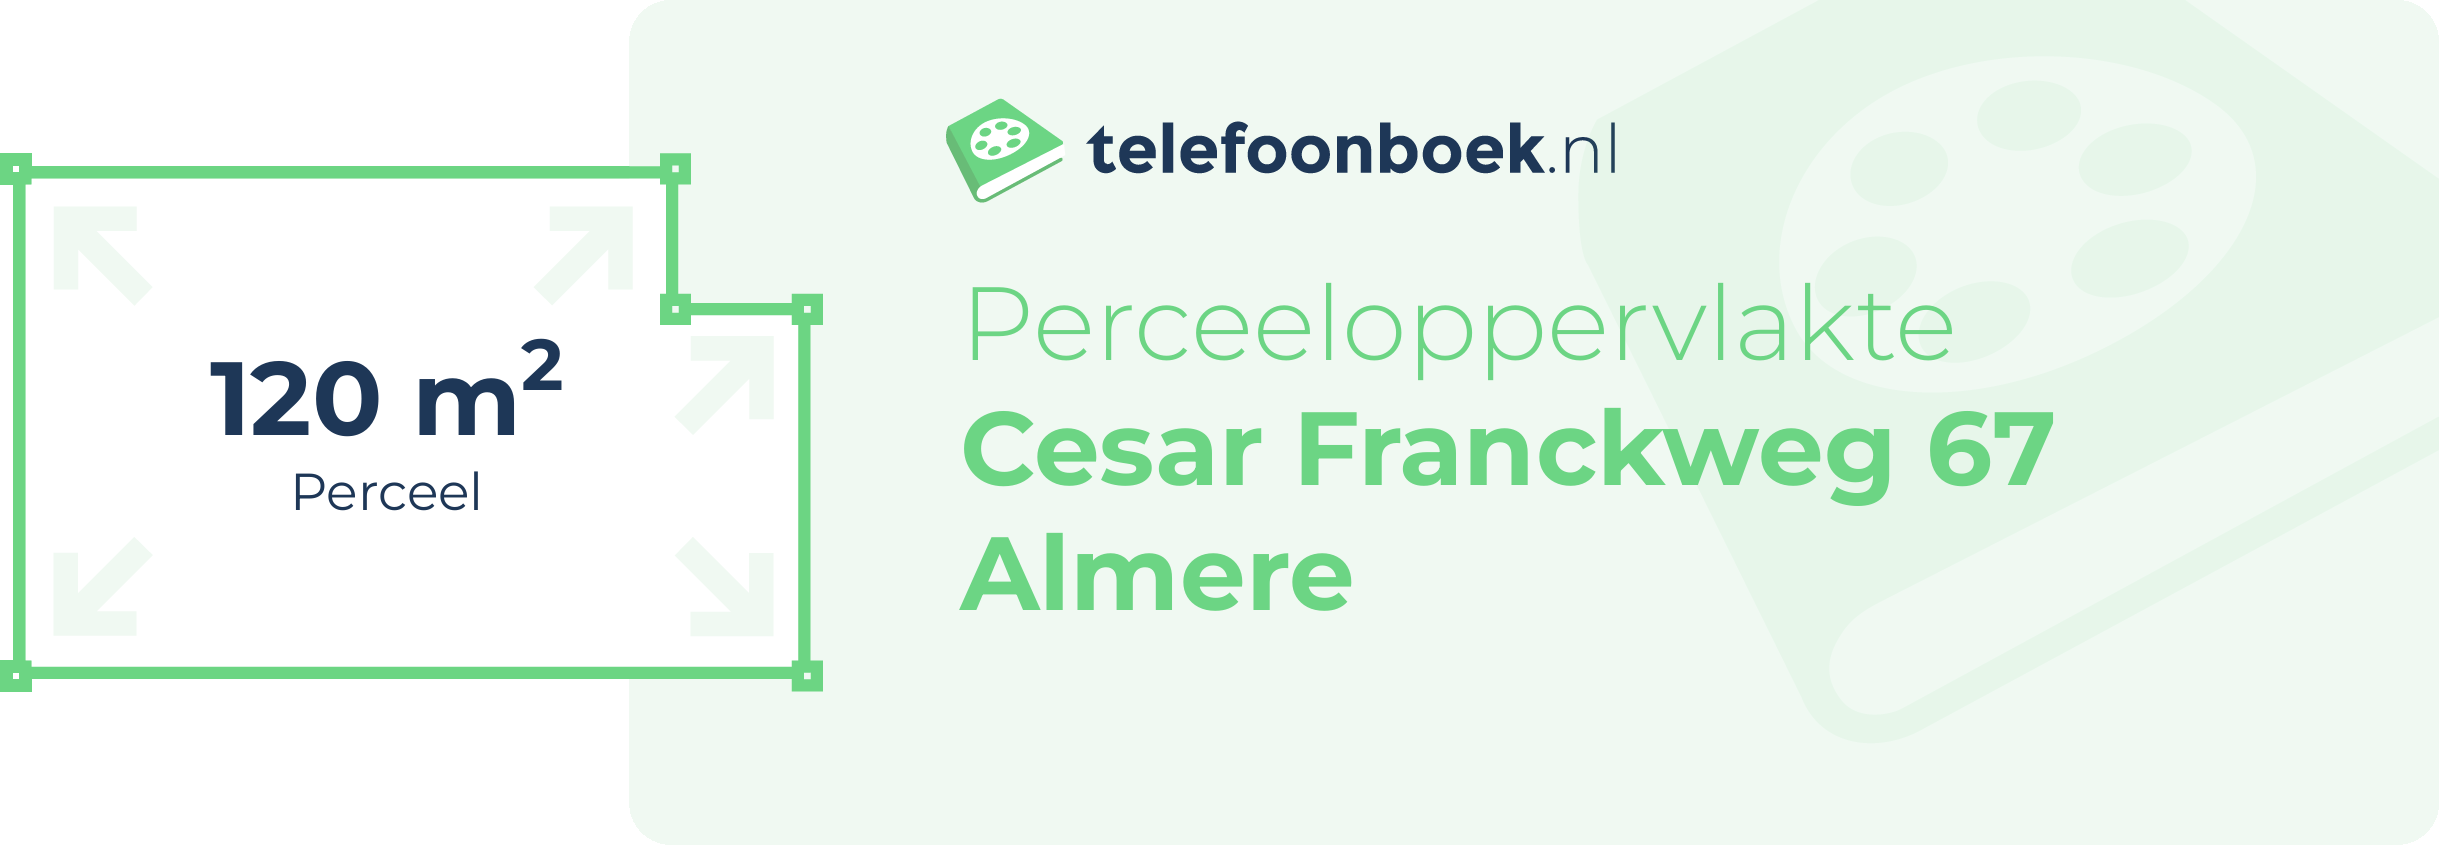 Perceeloppervlakte Cesar Franckweg 67 Almere